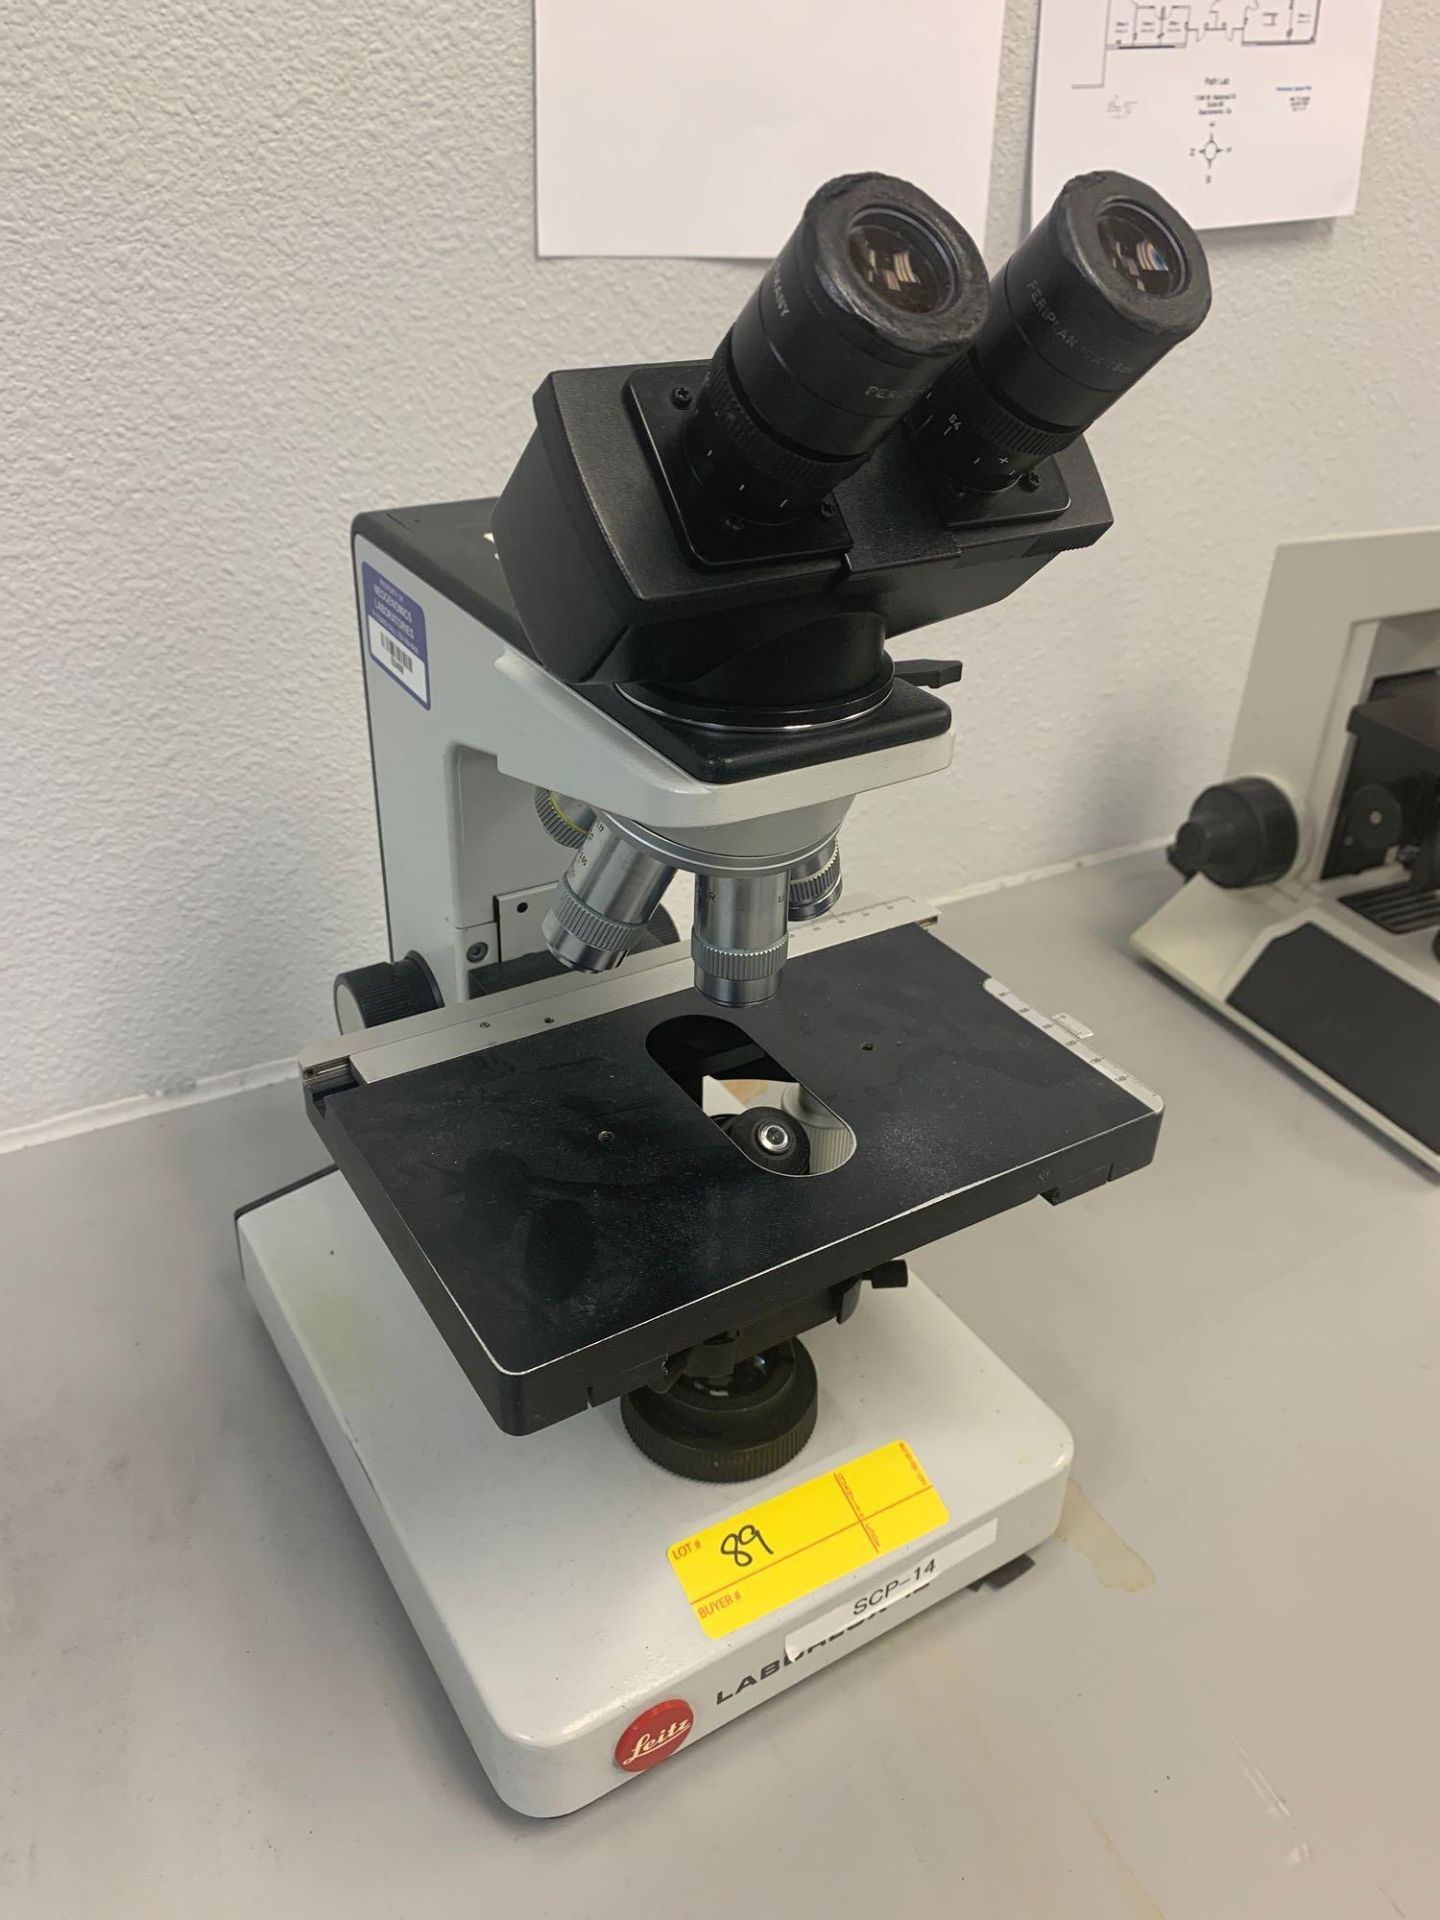 Leitz Microscope